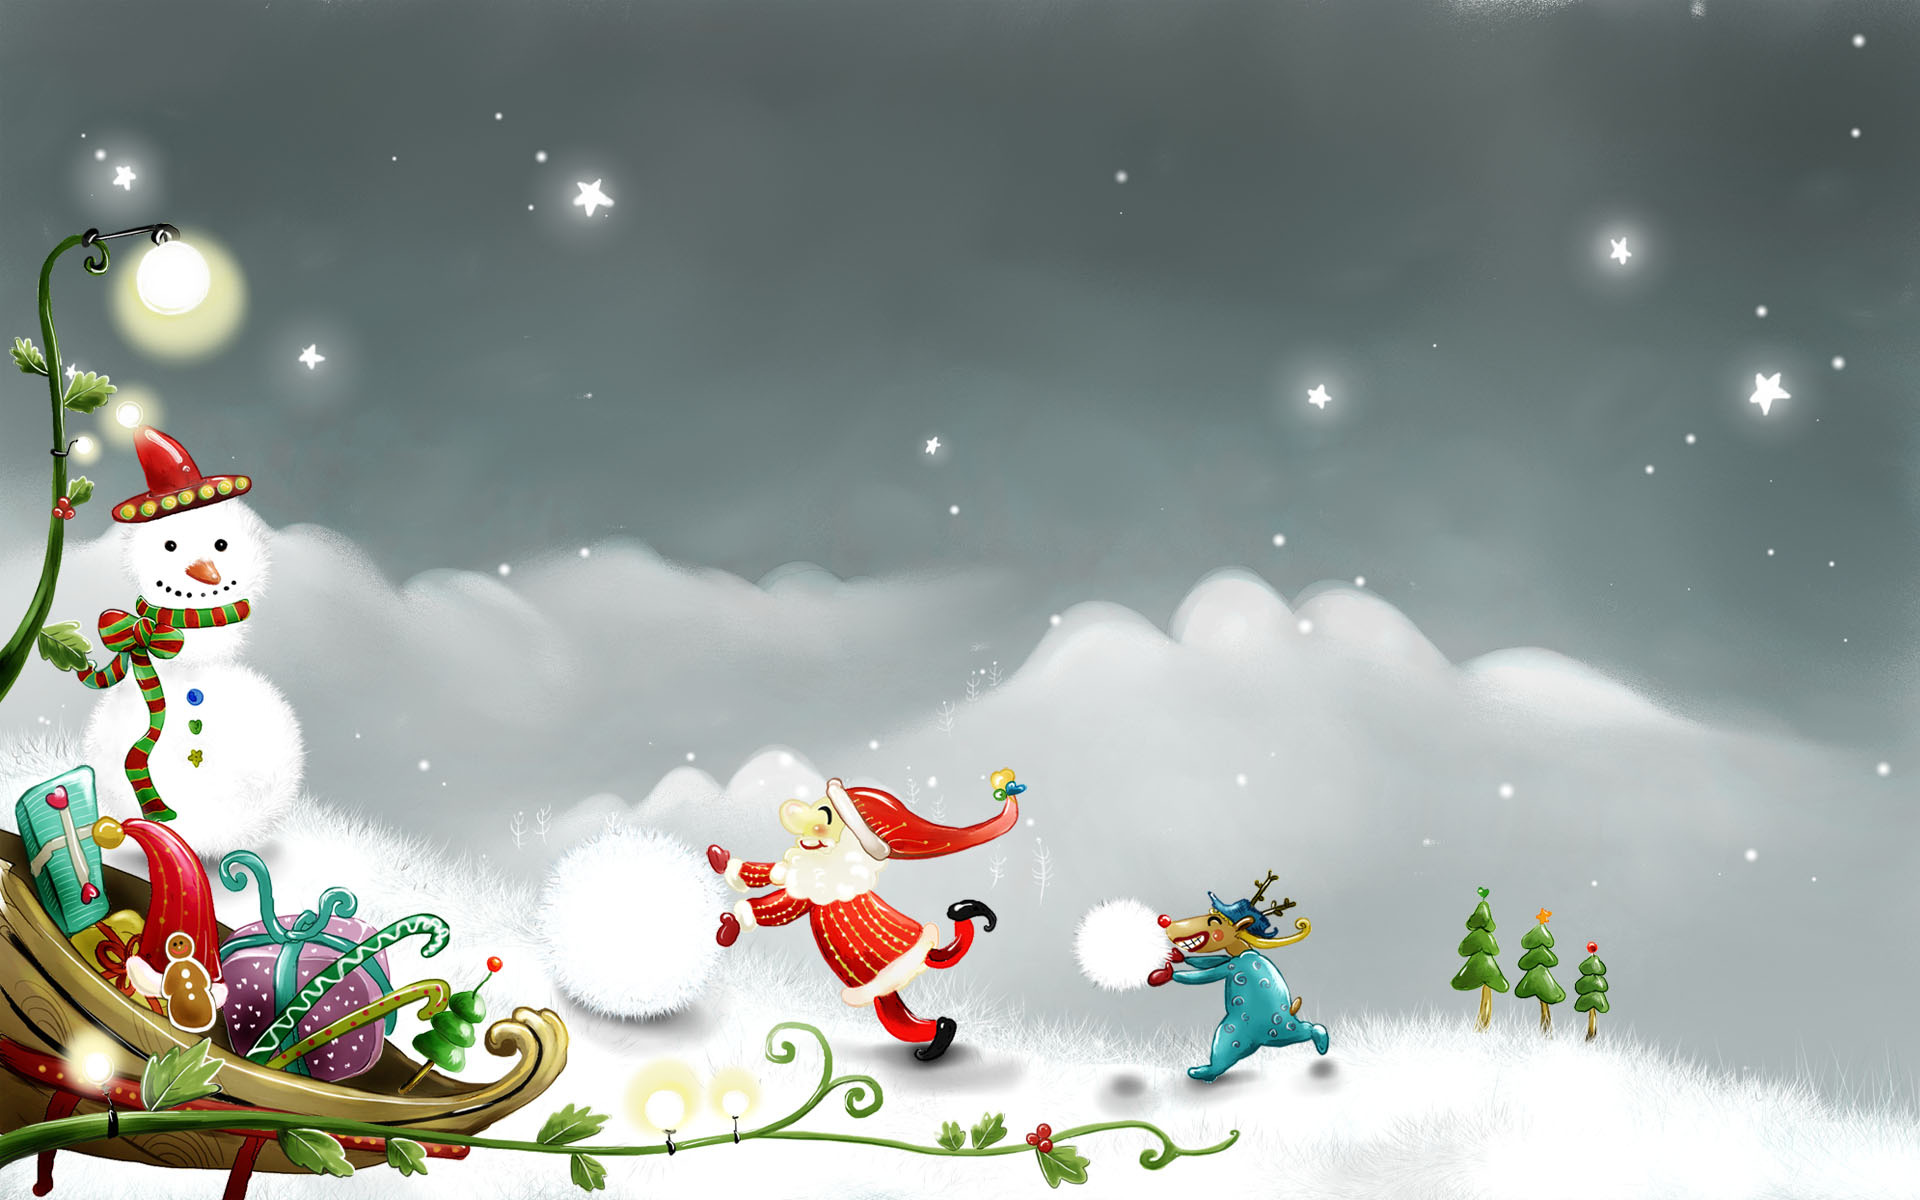 3d обои Маленький дед Мороз с весёлым оленем катают снежки, рядом снеговик и санки с подарками  зима # 41001